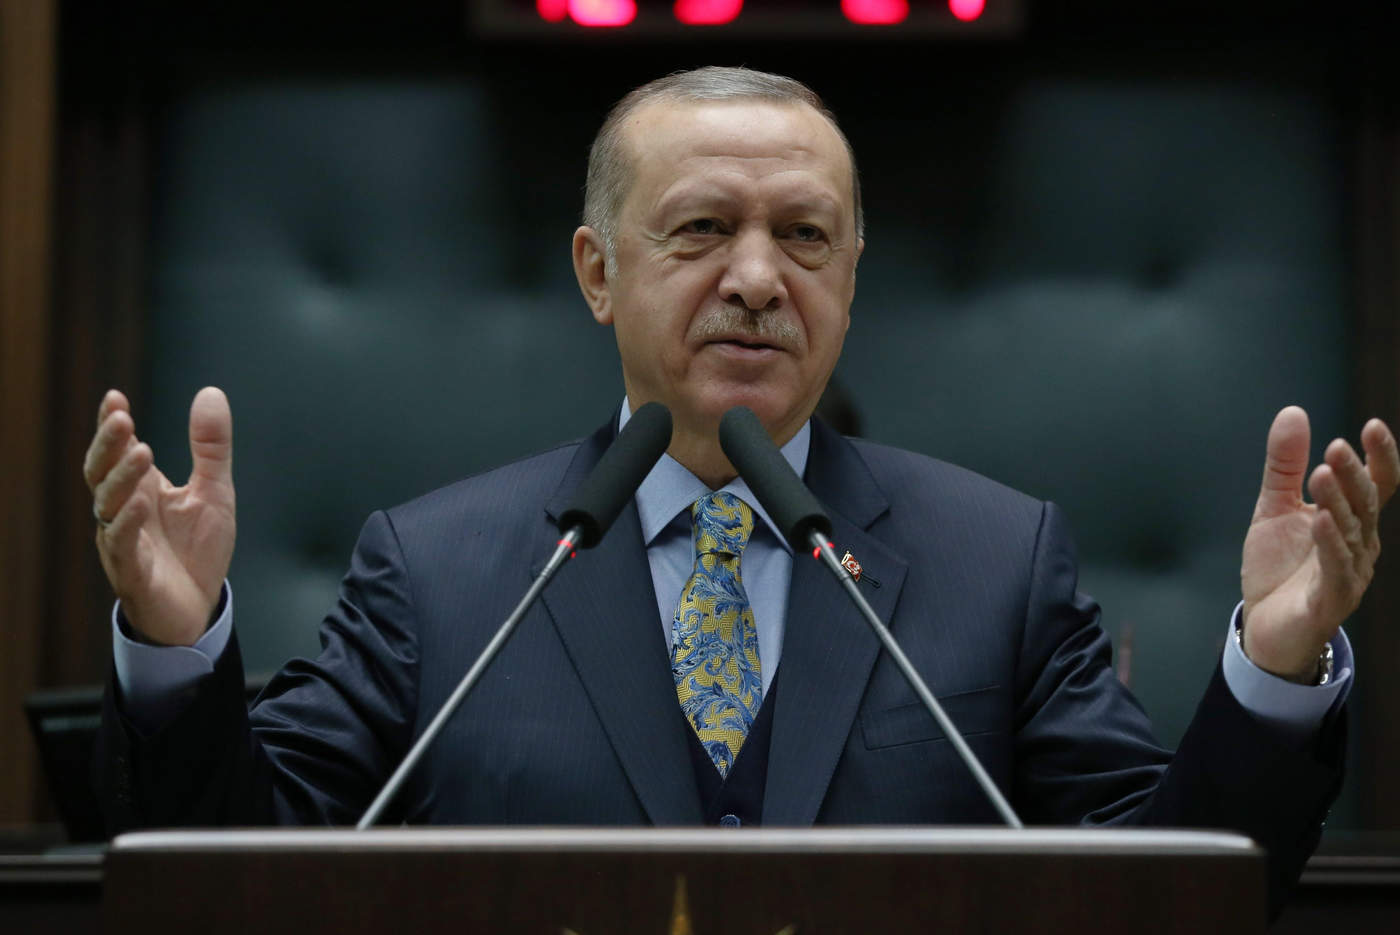 Erdogan subrayó que respalda la idea de designar un área de 32 kilómetros en la frontera entre Turquía y Siria,  'limpia de terrorismo'. (EFE)